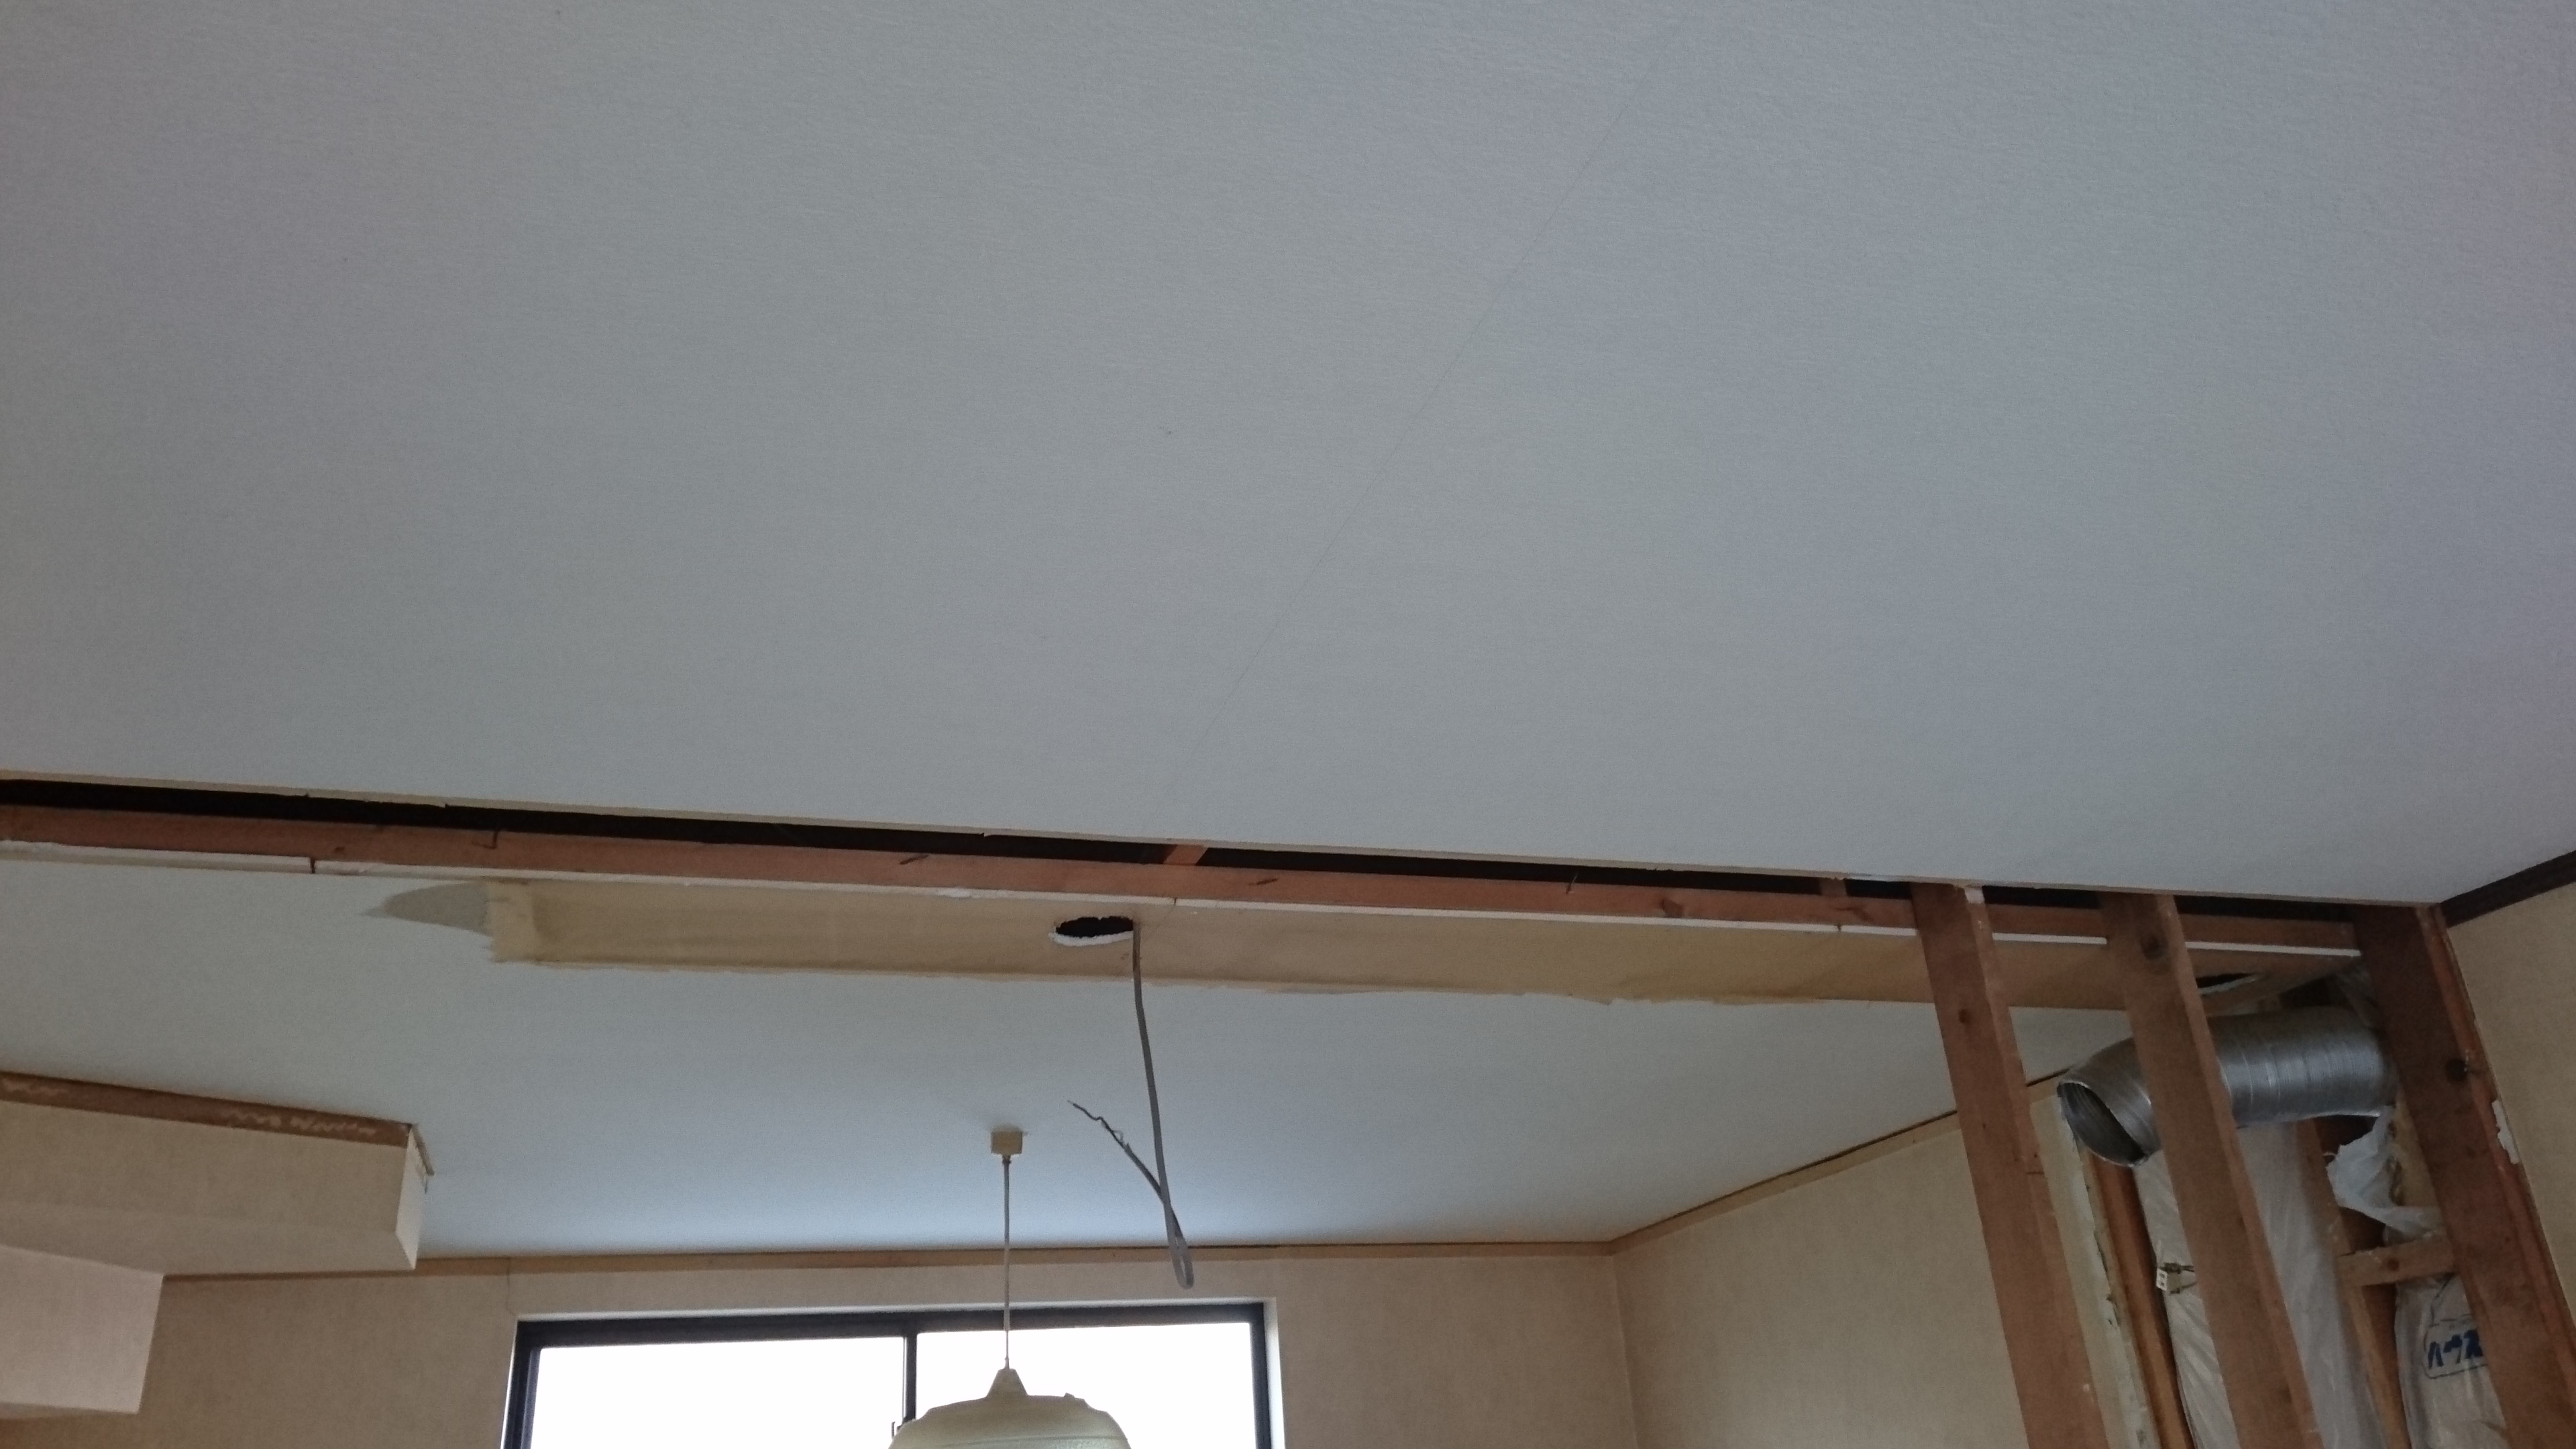 吊戸棚を撤去すると天井の段差と隙間が現れました。どうやって納めようか悩む所です。